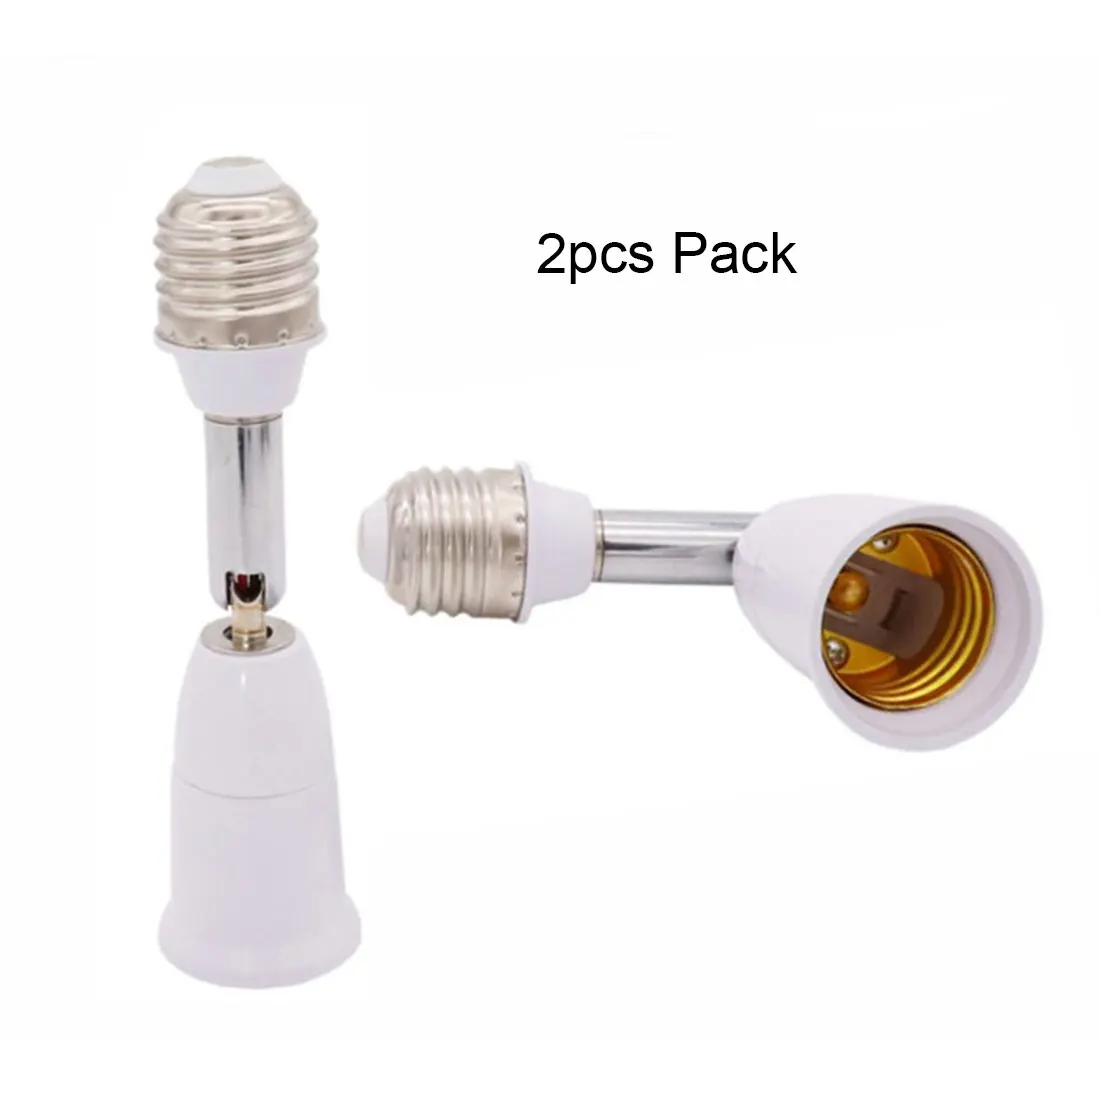 E27 LED Light Studio Flexible Lamp Holder Extension Adapter Socket Converter 62 